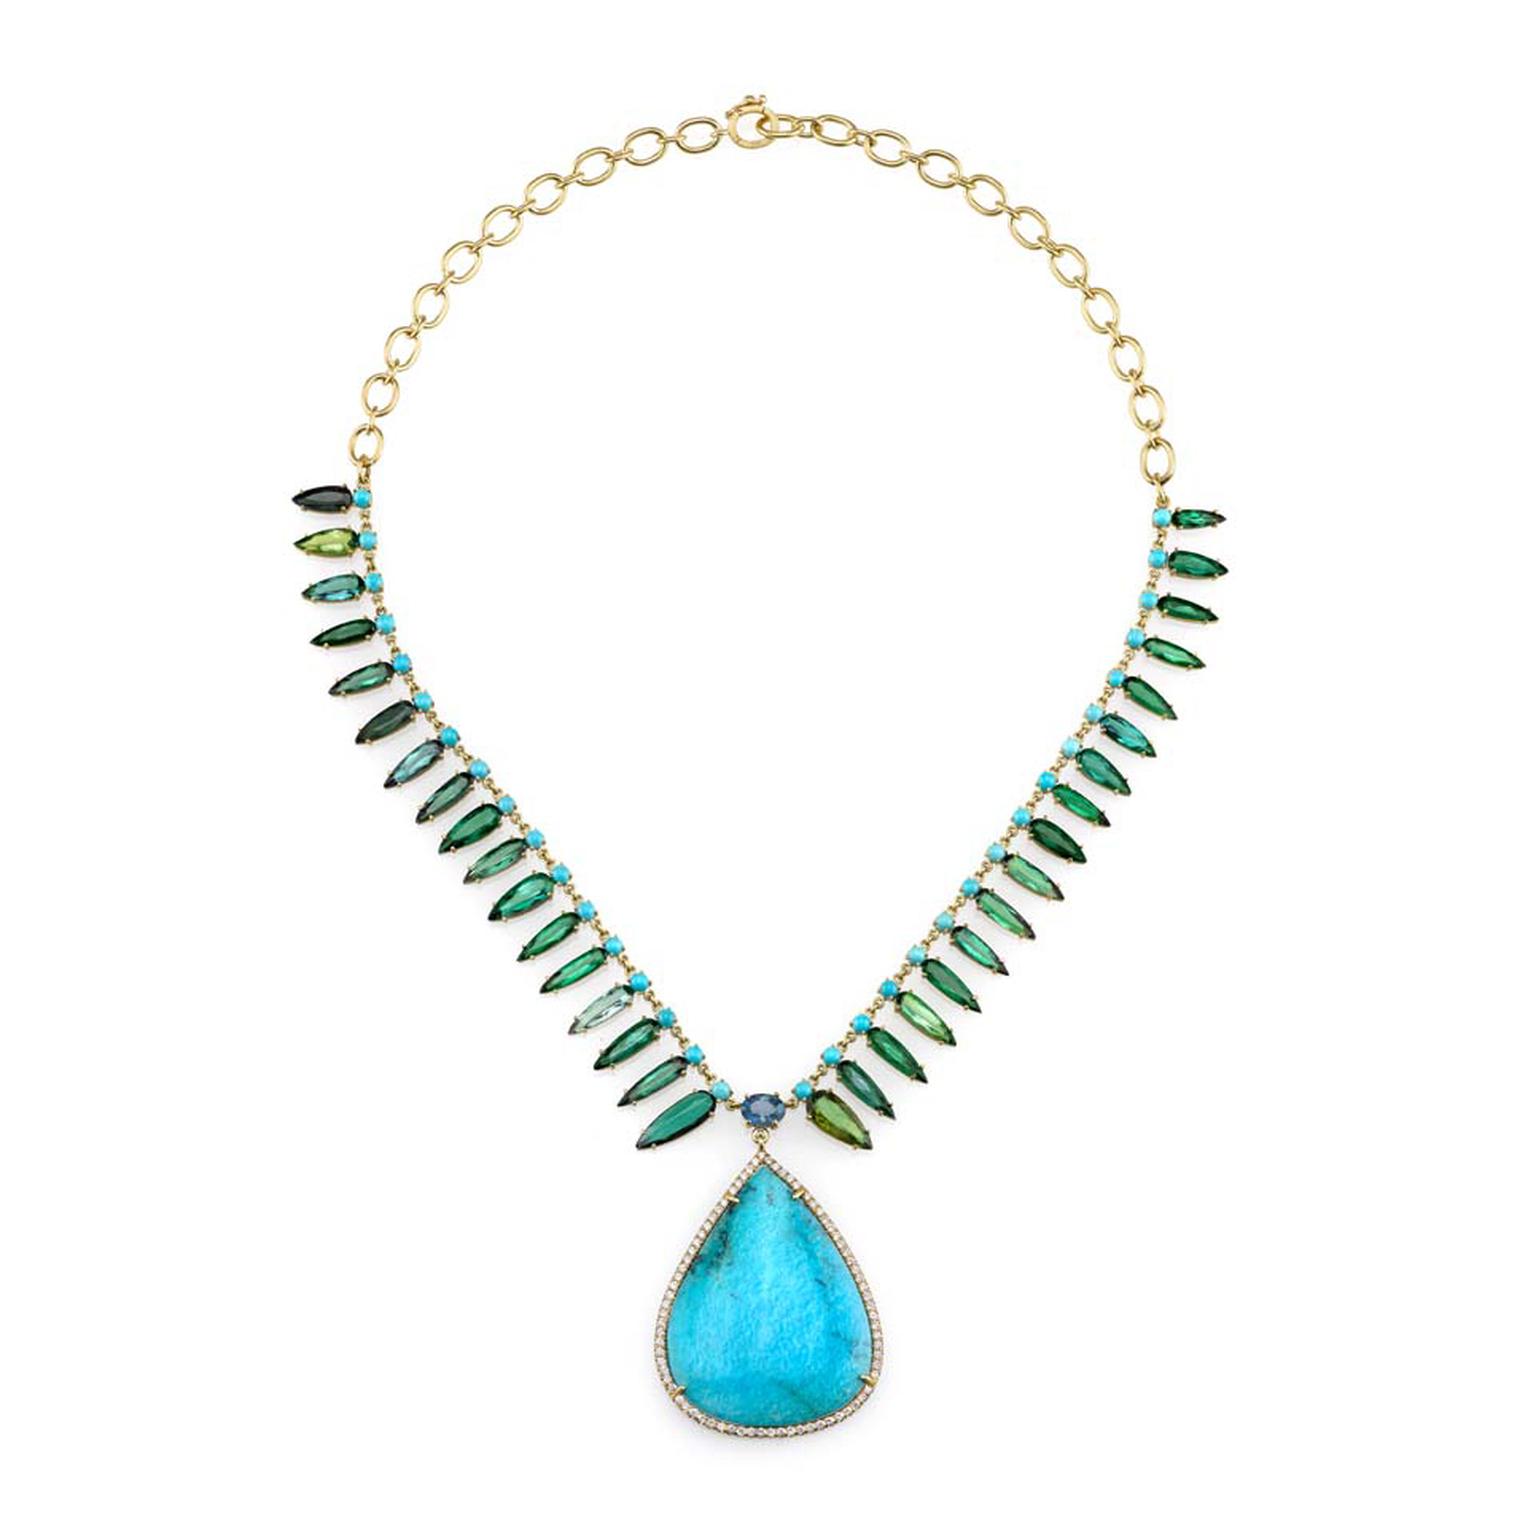 Irene Neuwirth turquoise necklace